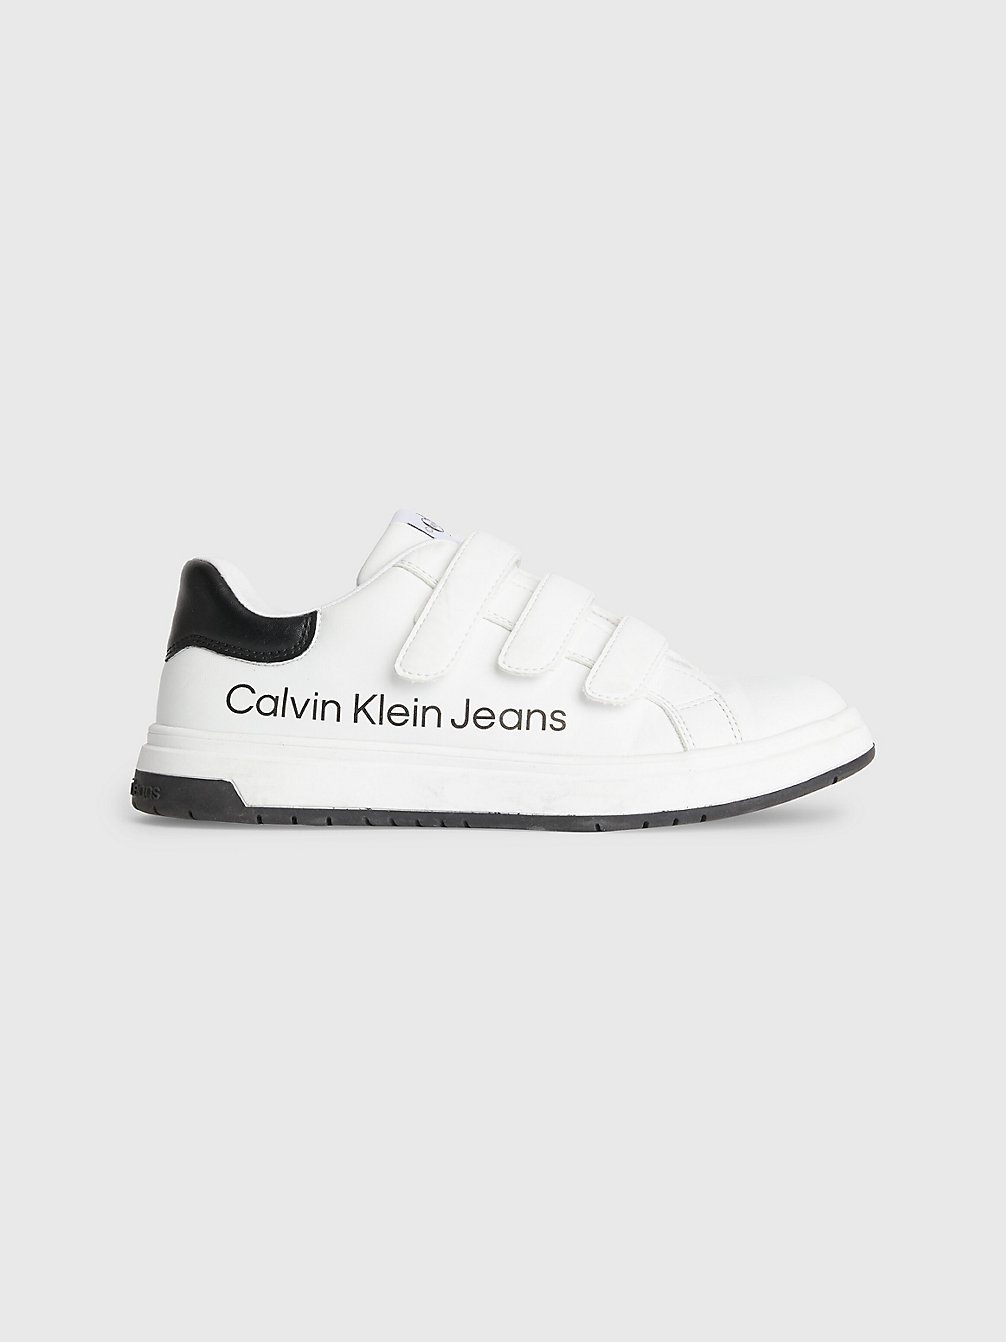 WHITE / BLACK > Recycelte Sneakers Für Kinder > undefined kids unisex - Calvin Klein